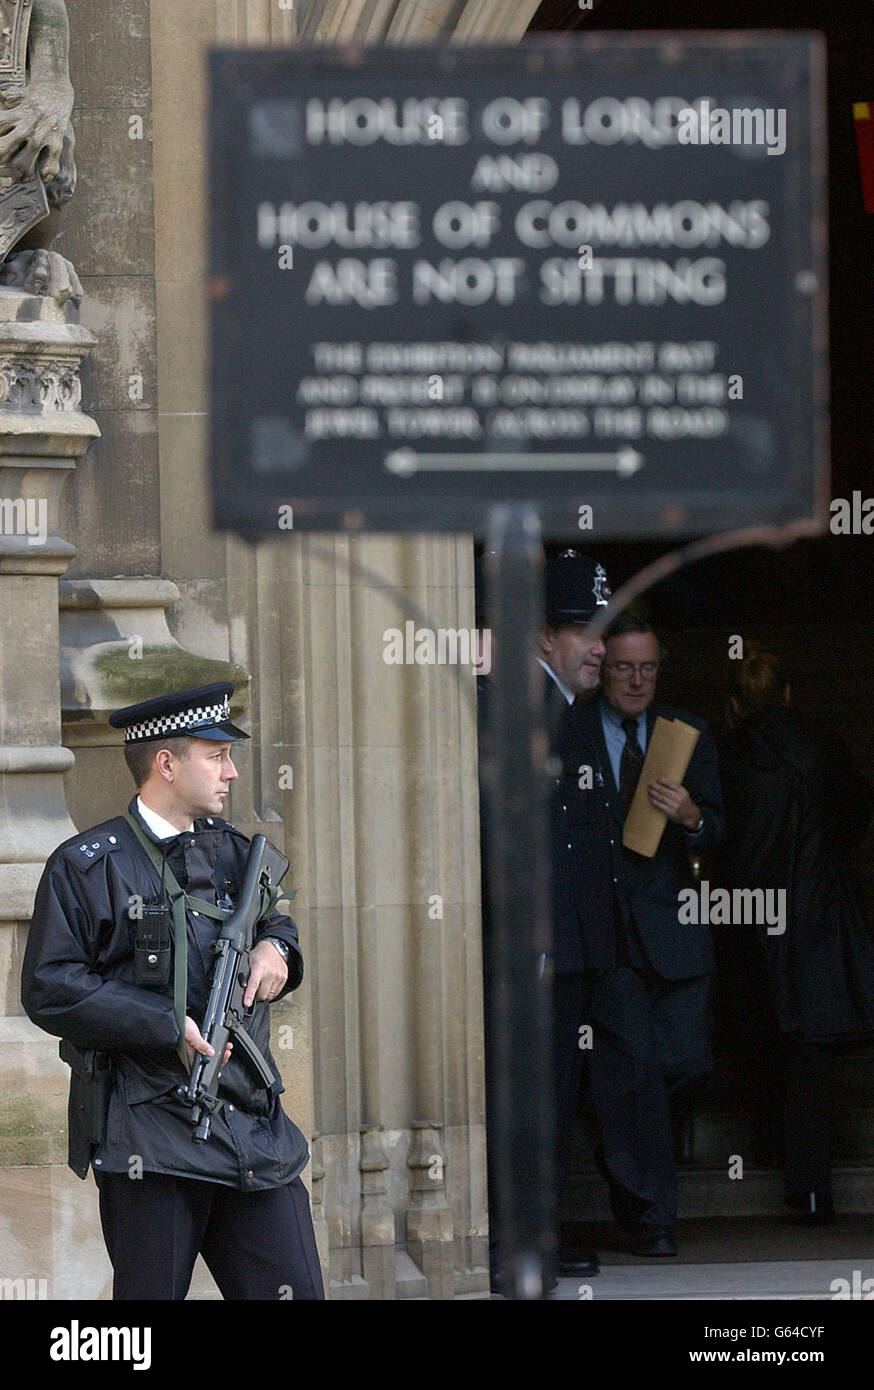 Un policía tiene un arma semiautomática frente al Palacio de Westminster antes de la apertura del parlamento en Londres. La Reina Isabel II de Gran Bretaña estaba esbozando los planes del Gobierno para la legislación del año próximo. Foto de stock